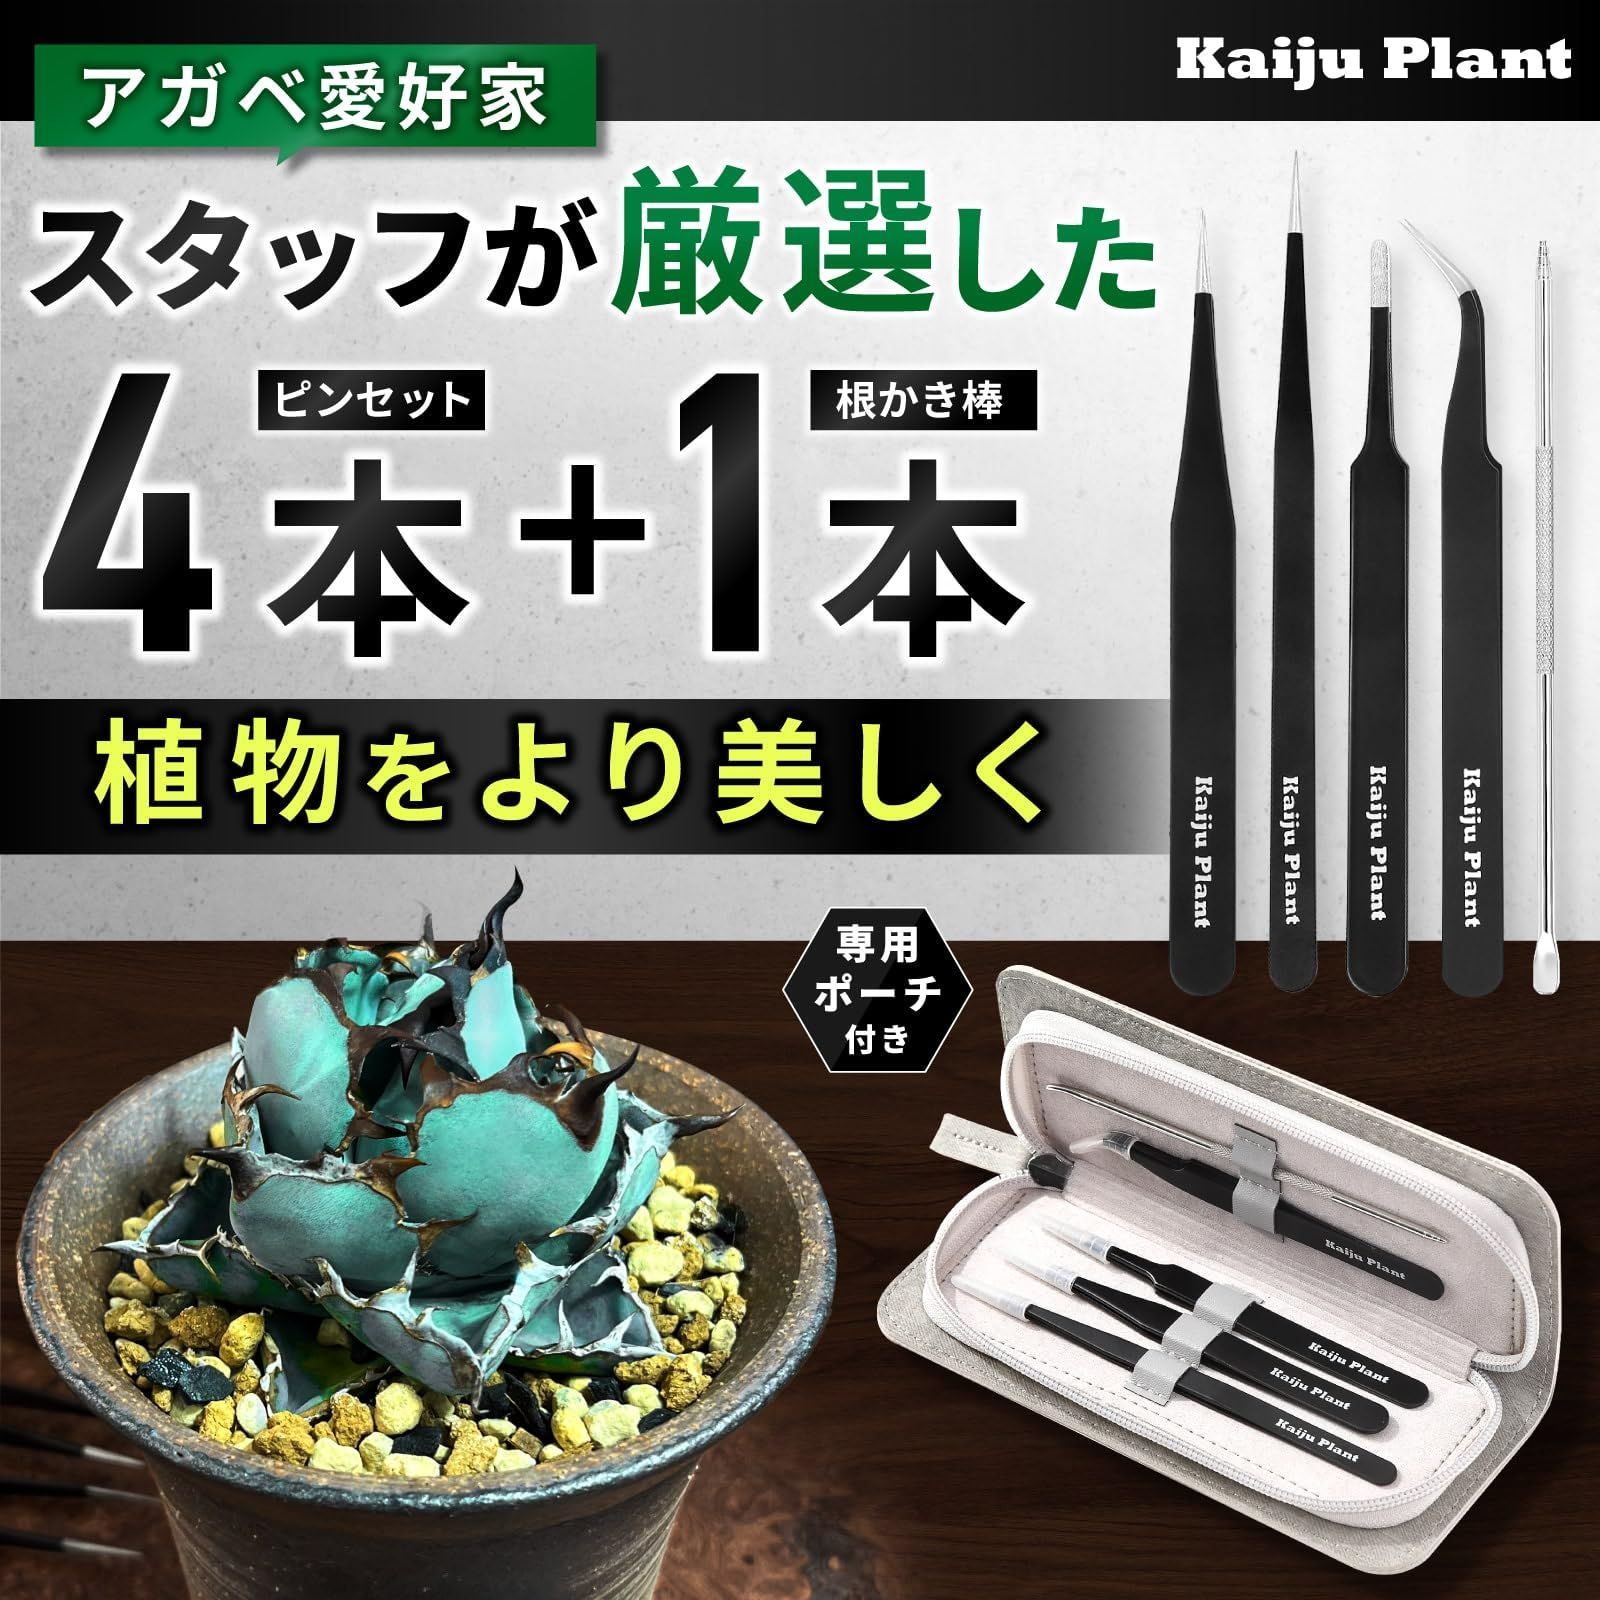 Kaiju Plant ピンセット 4種 + 根かき棒 植替え 美しく仕上げる 多肉 アガベ サボテン 園芸 DIY ポーチ付き ステンレス